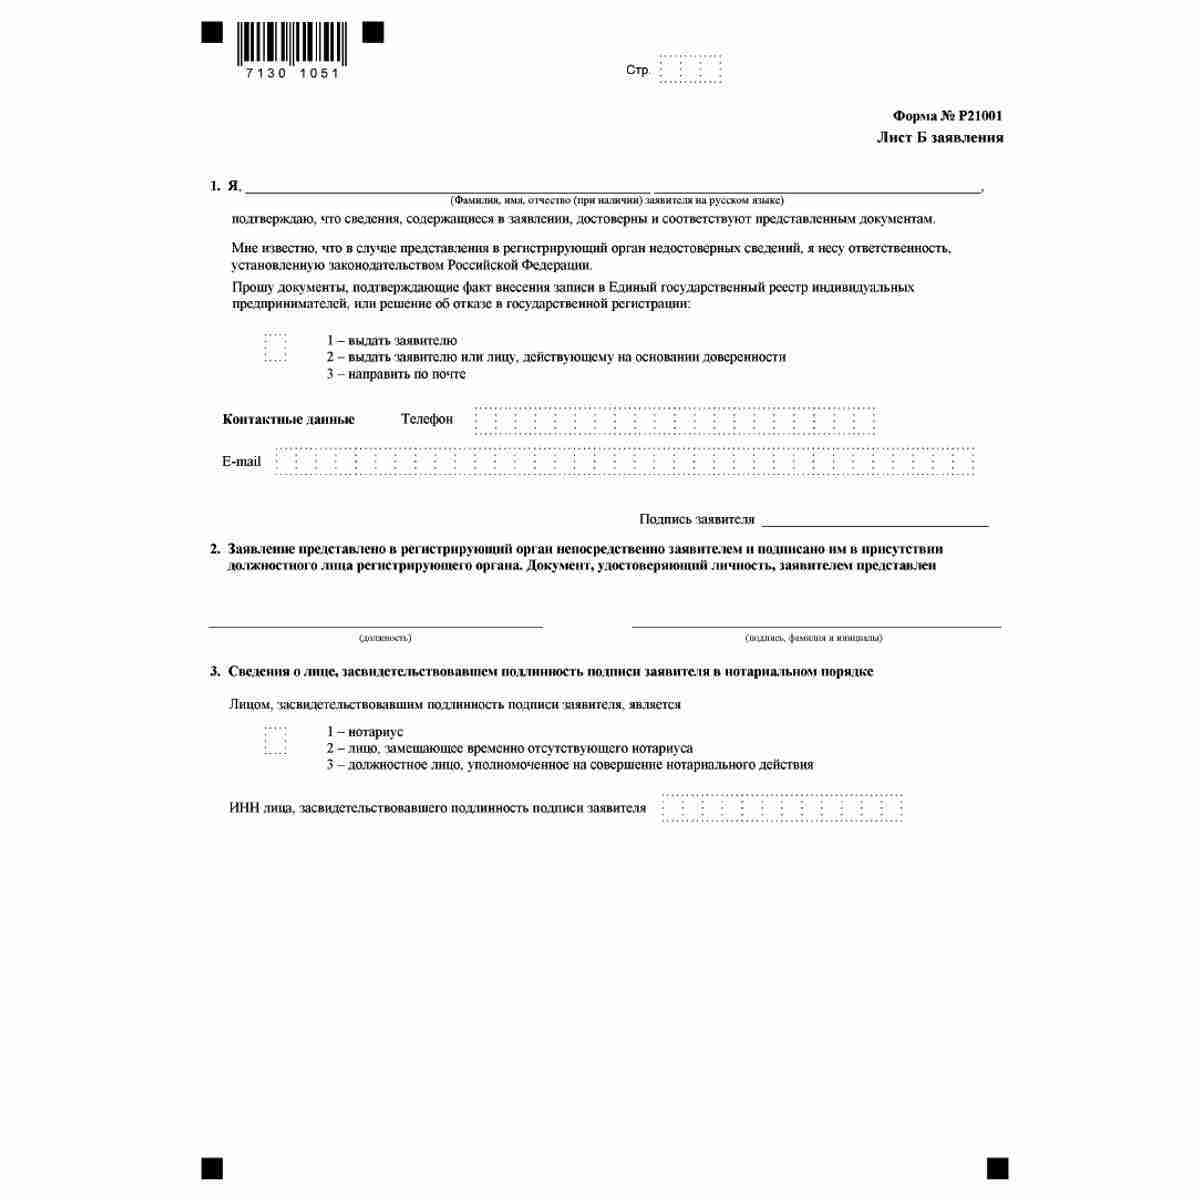 Форма №Р21001 "Заявление о государственной регистрации физического лица в качестве индивидуального предпринимателя" (КНД 1112501). Лист Б